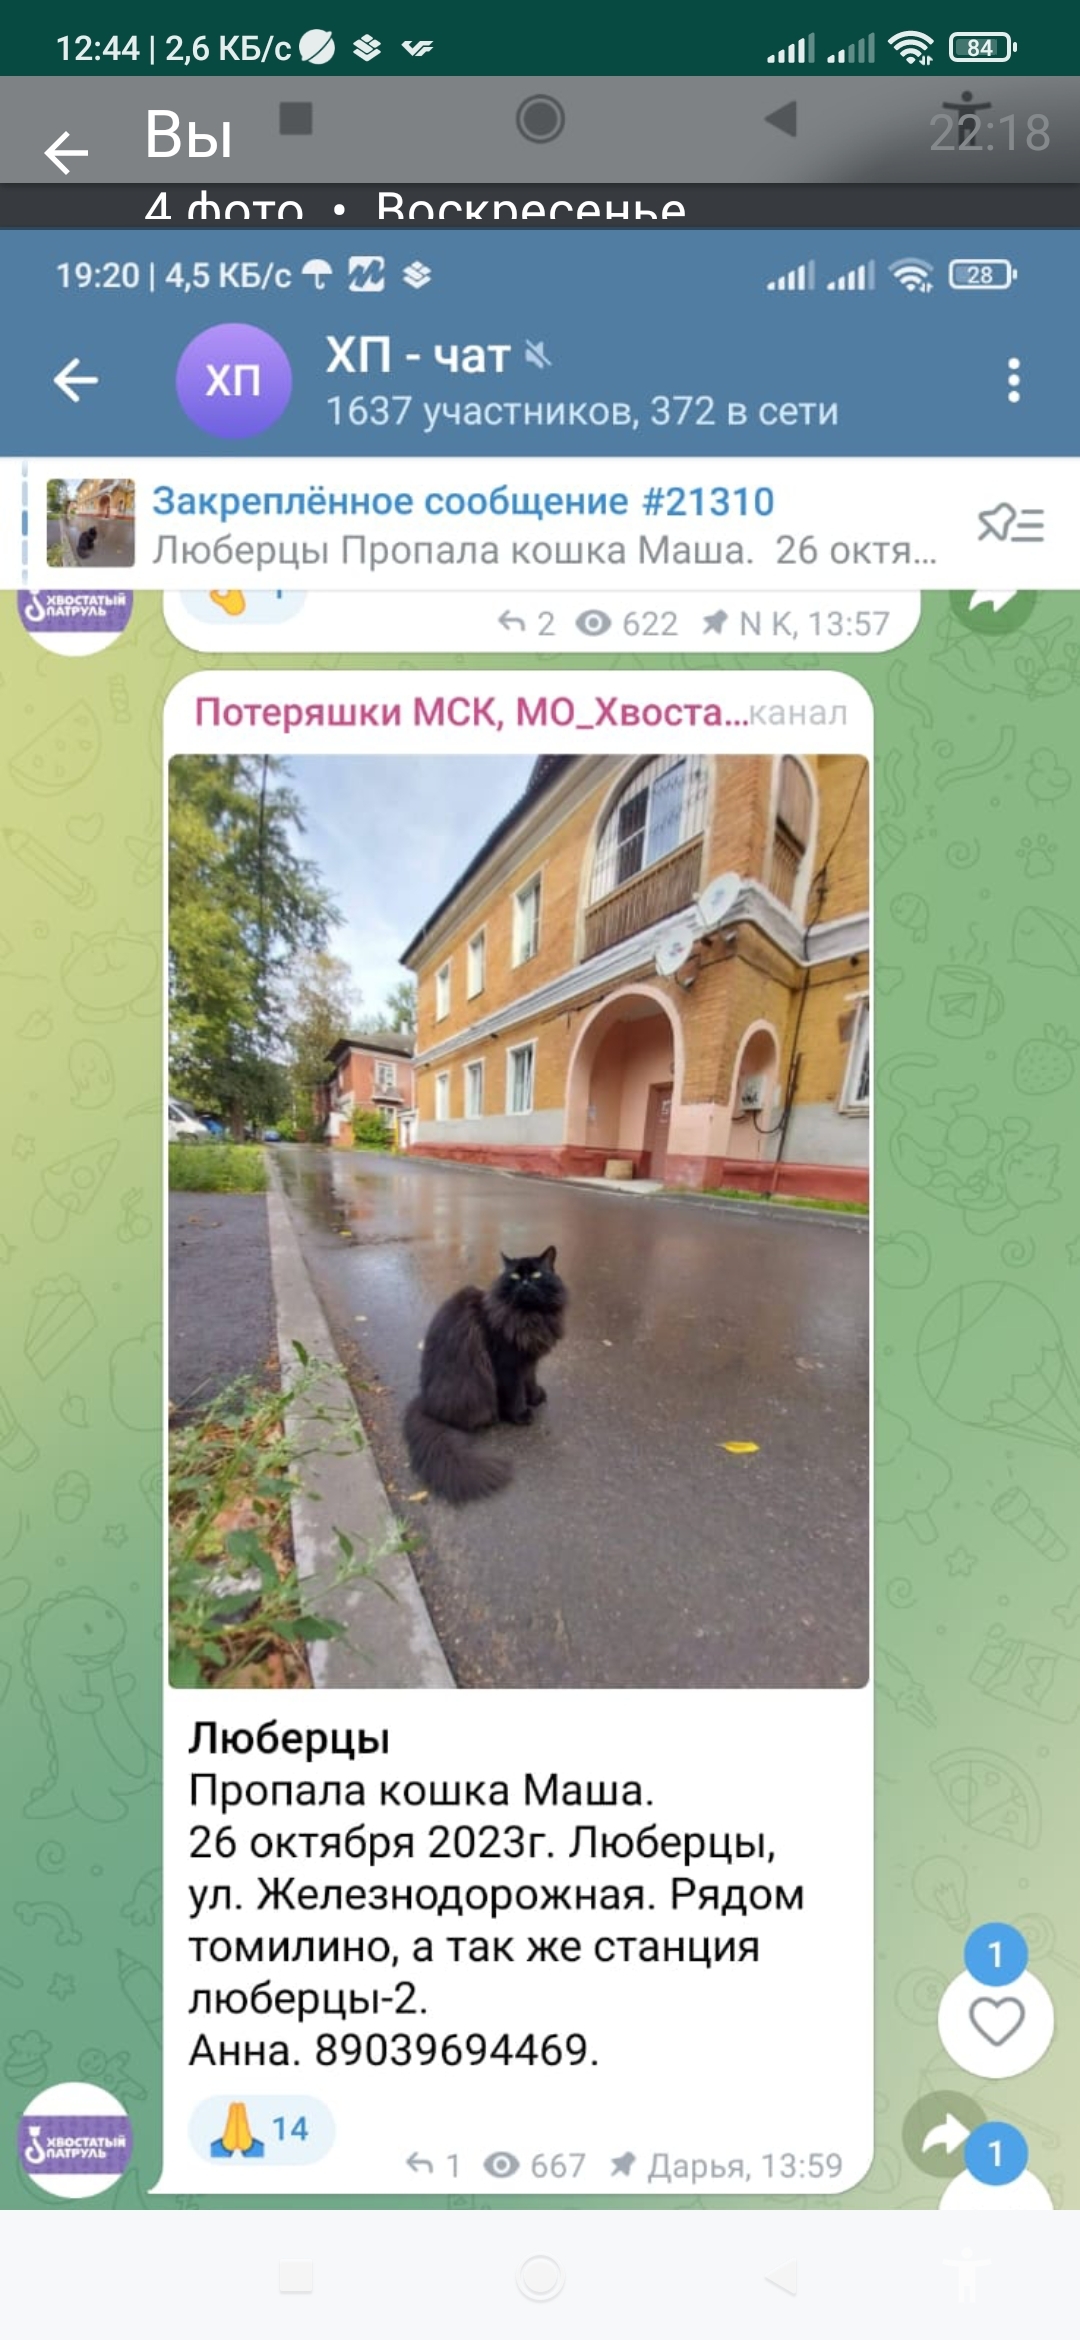 Пропала кошка Маша. Ждут на Егорьевском шоссе